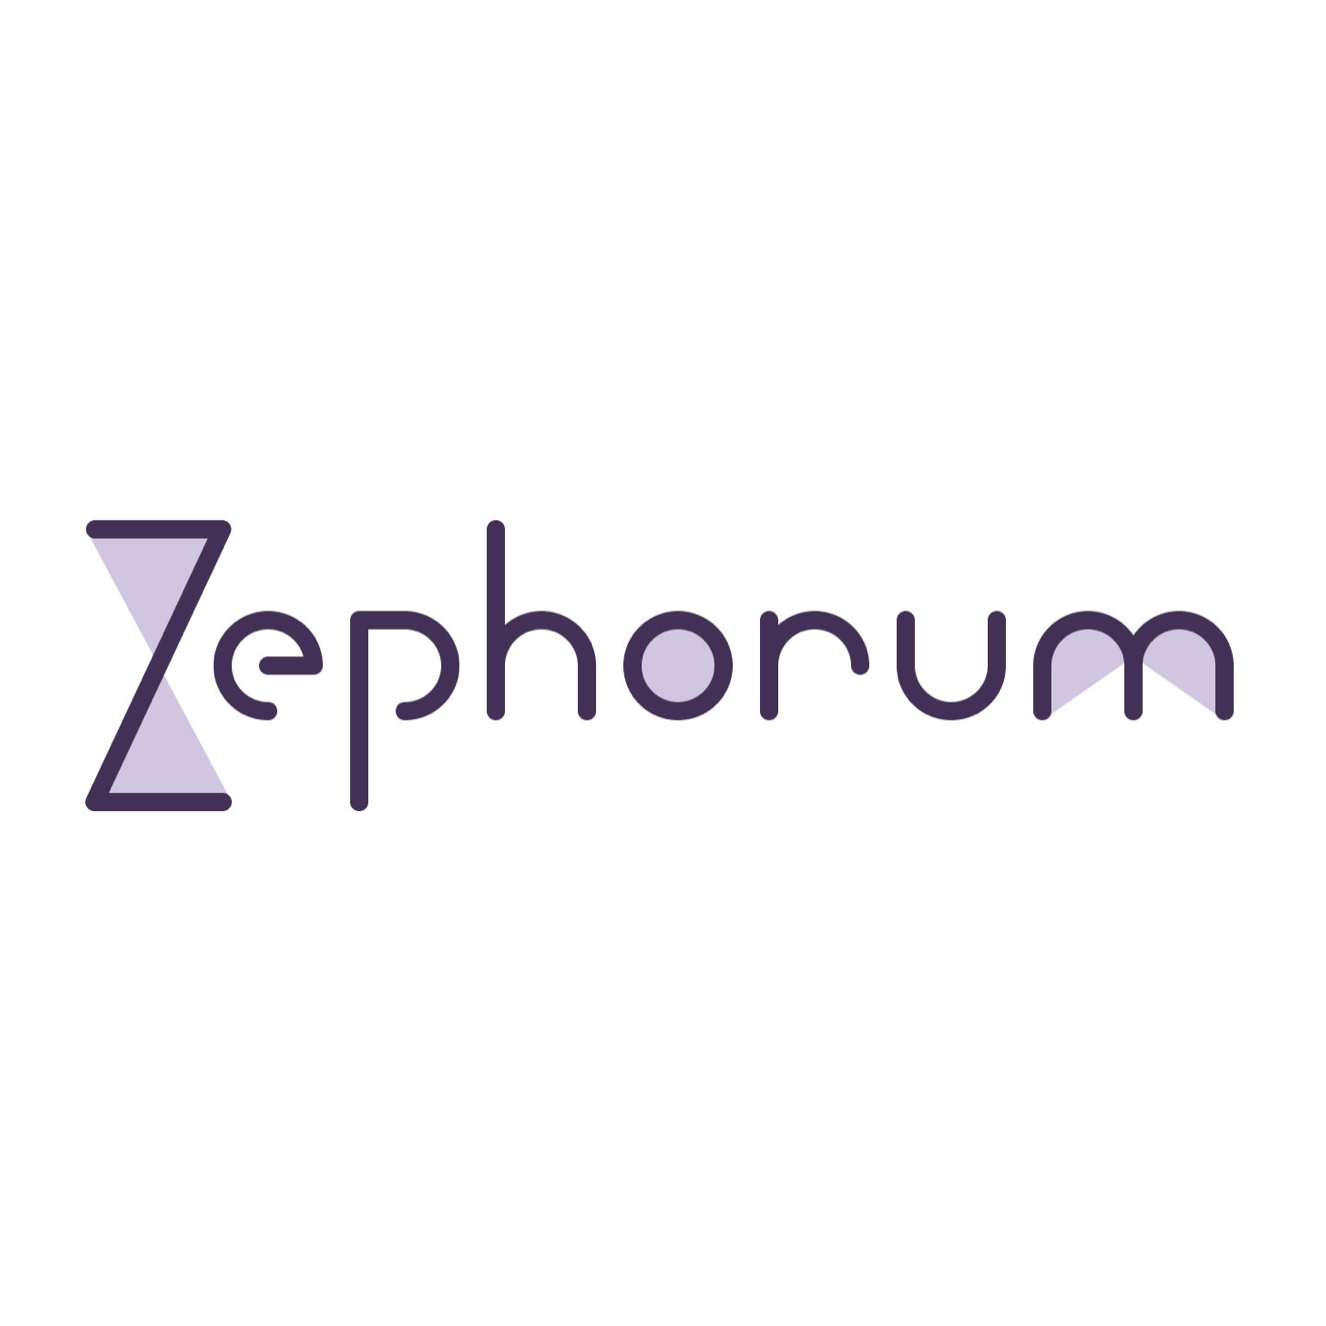 zephorum logo